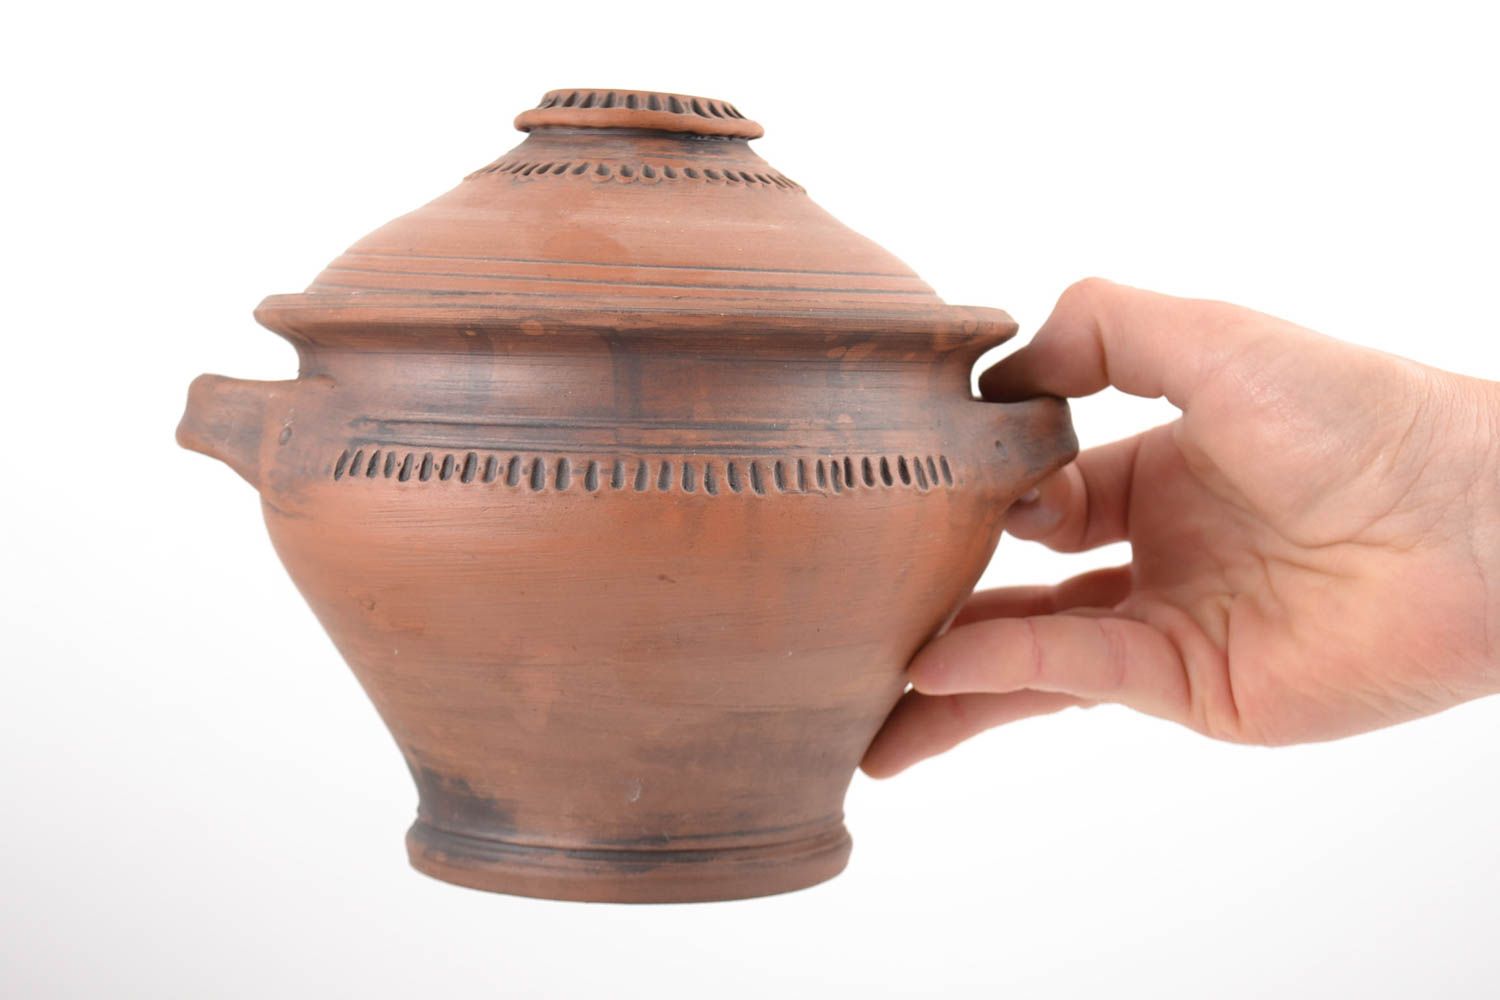 Joli pot en céramique pour cuisiner avec couvercle fait main 1.5 litre photo 2